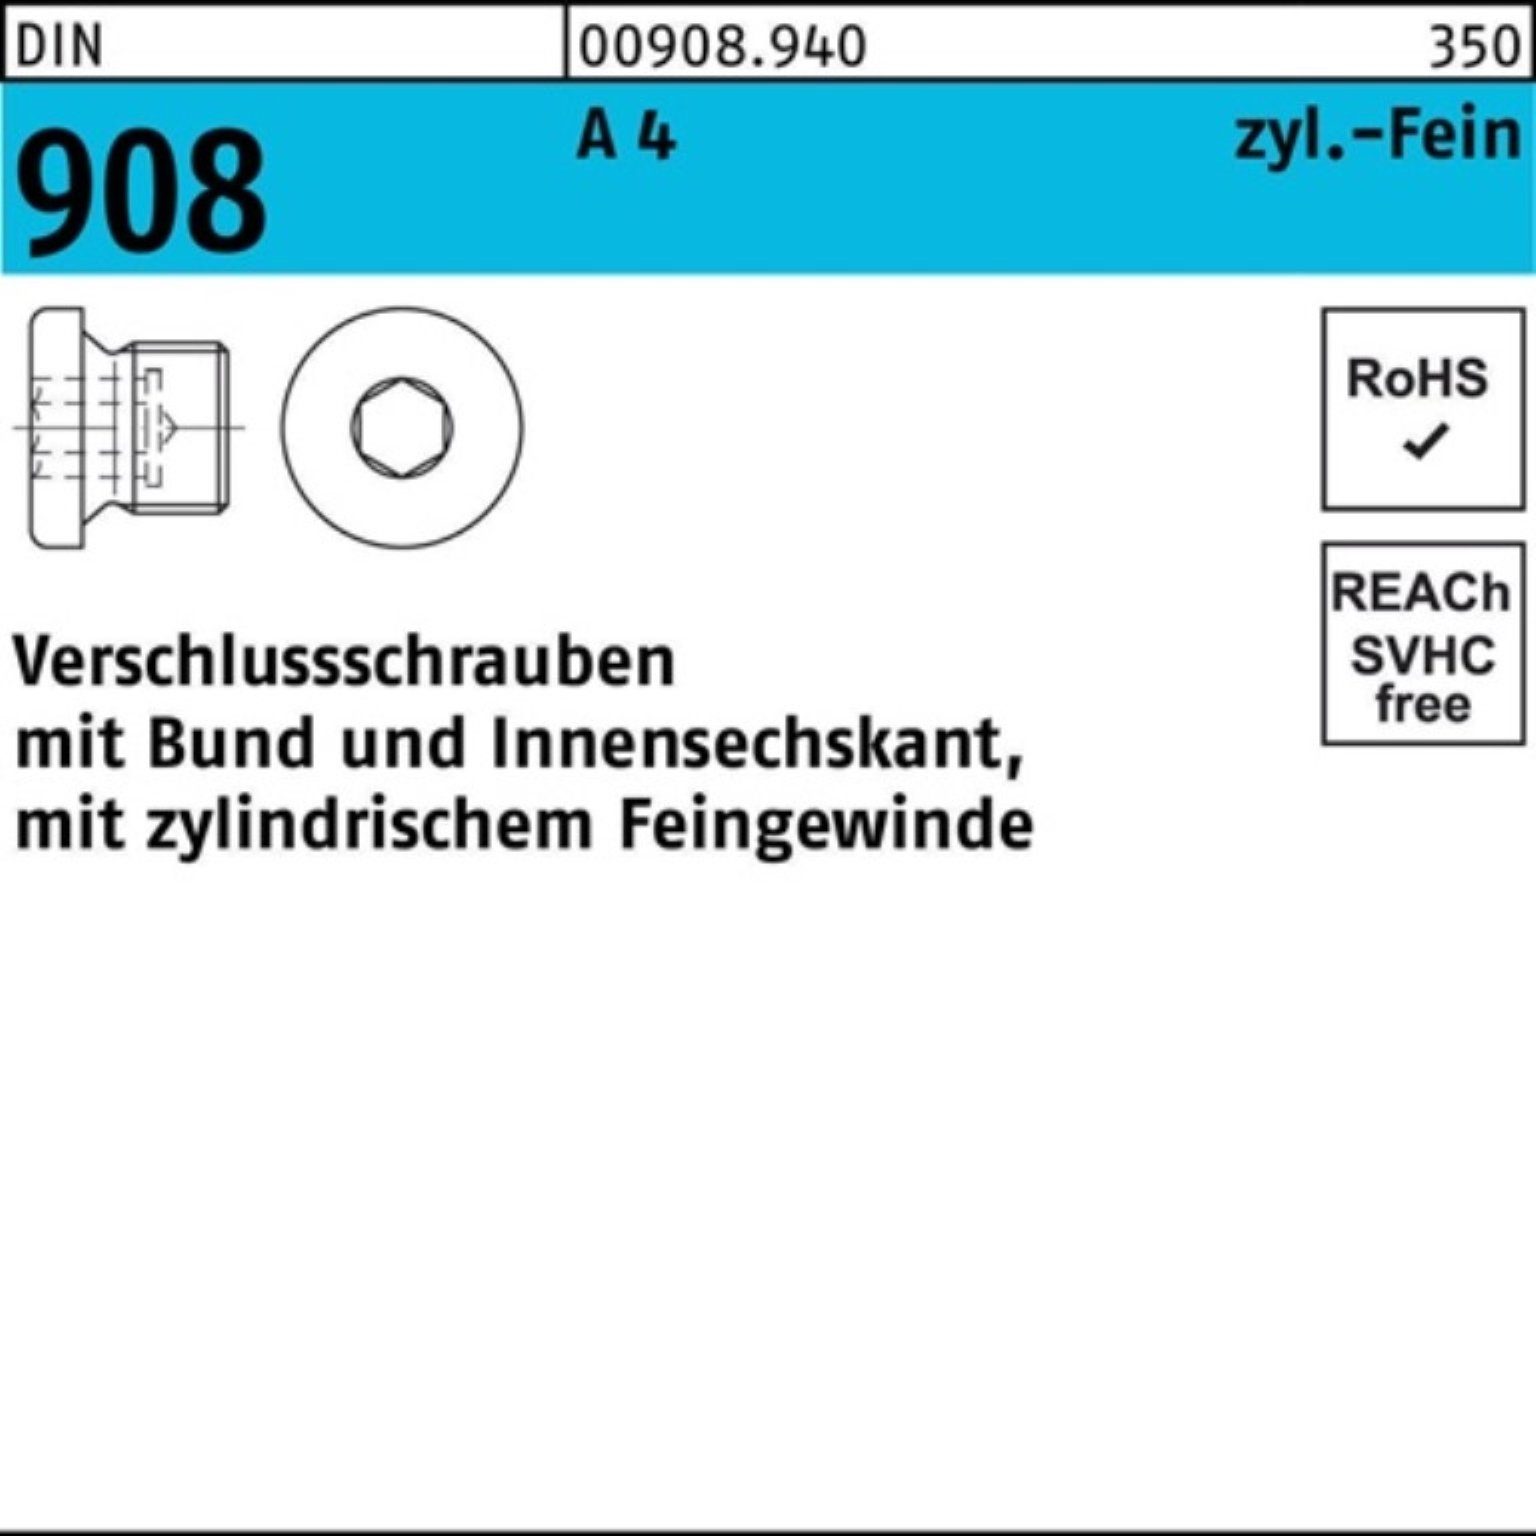 Reyher Schraube 100er Pack Verschlußschraube DIN 908 Bund/Innen-6kt M30x 1,5 A 4 50 S